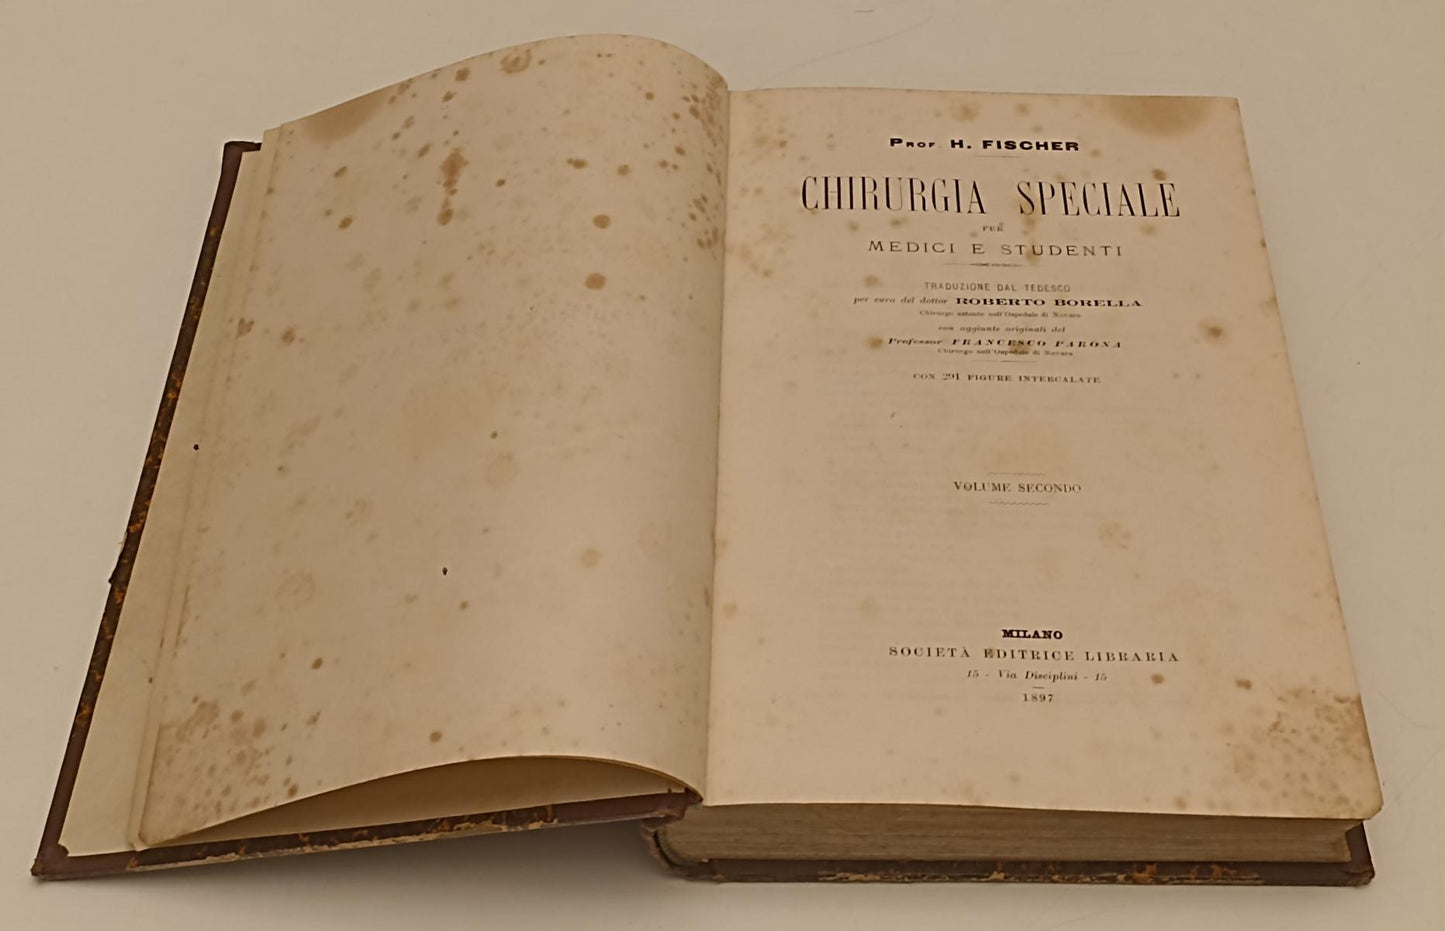 LH- CHIRURGIA SPECIALE VOLUME SECONDO - PROF. H. FISCHER ---- 1897 - C - YFS238